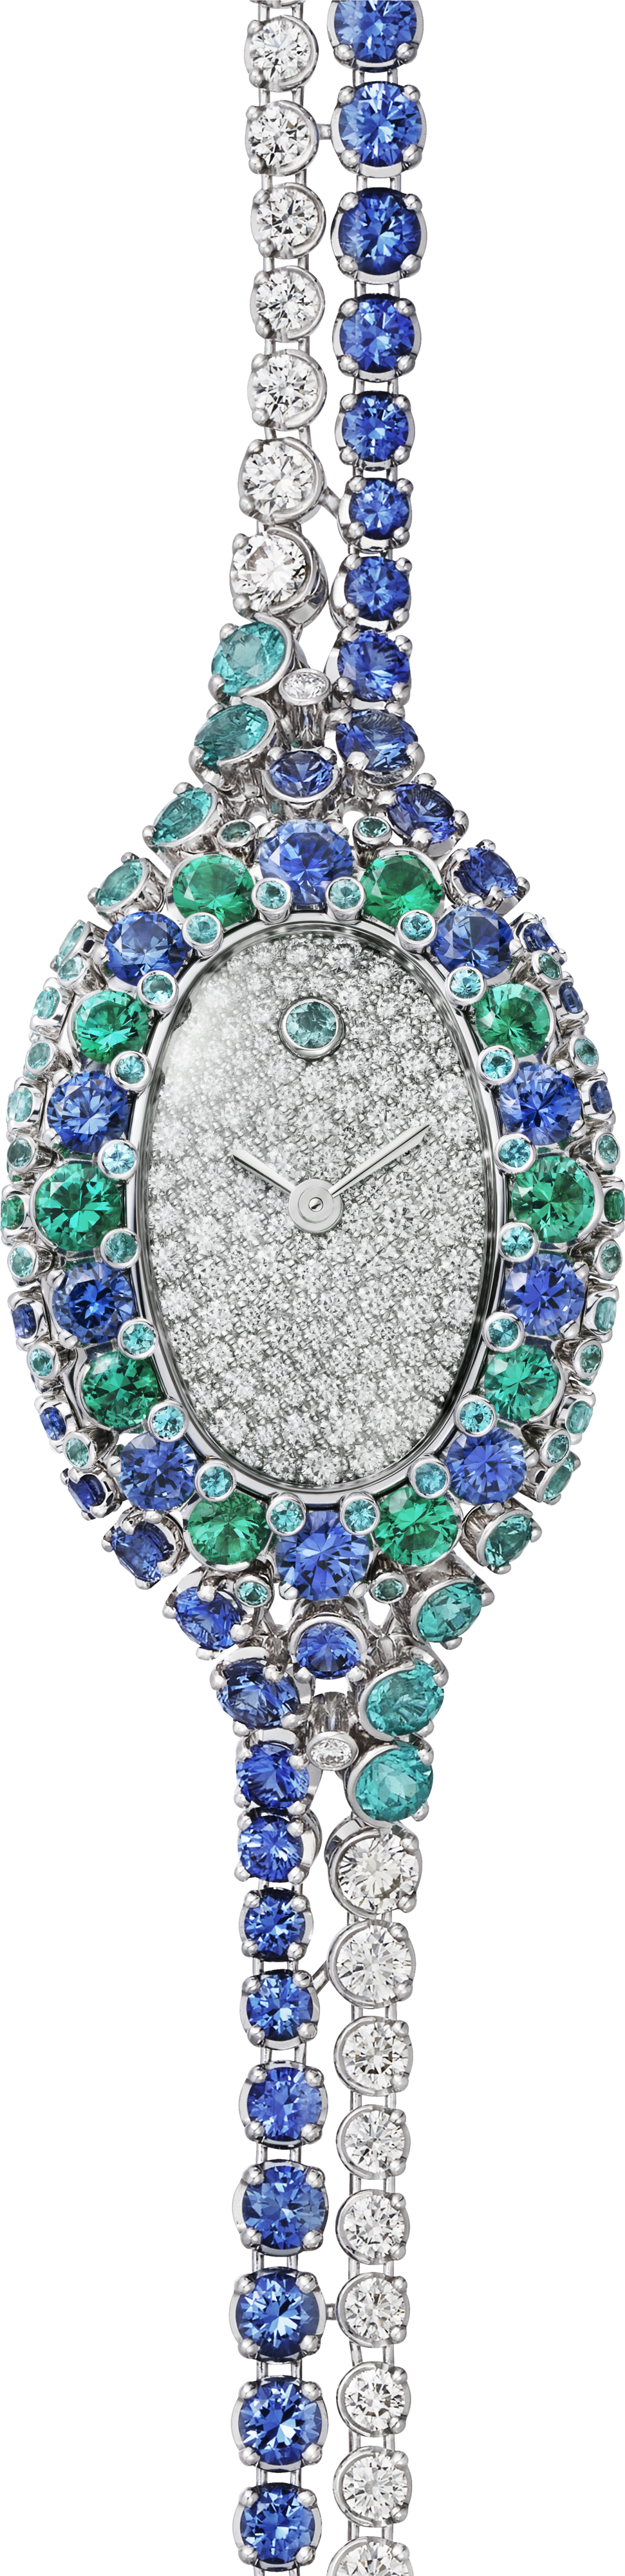 Baignoire 珠寶腕錶迷你款，石英機芯，白色黃金，鑽石，藍寶石，祖母綠，藍色碧璽。